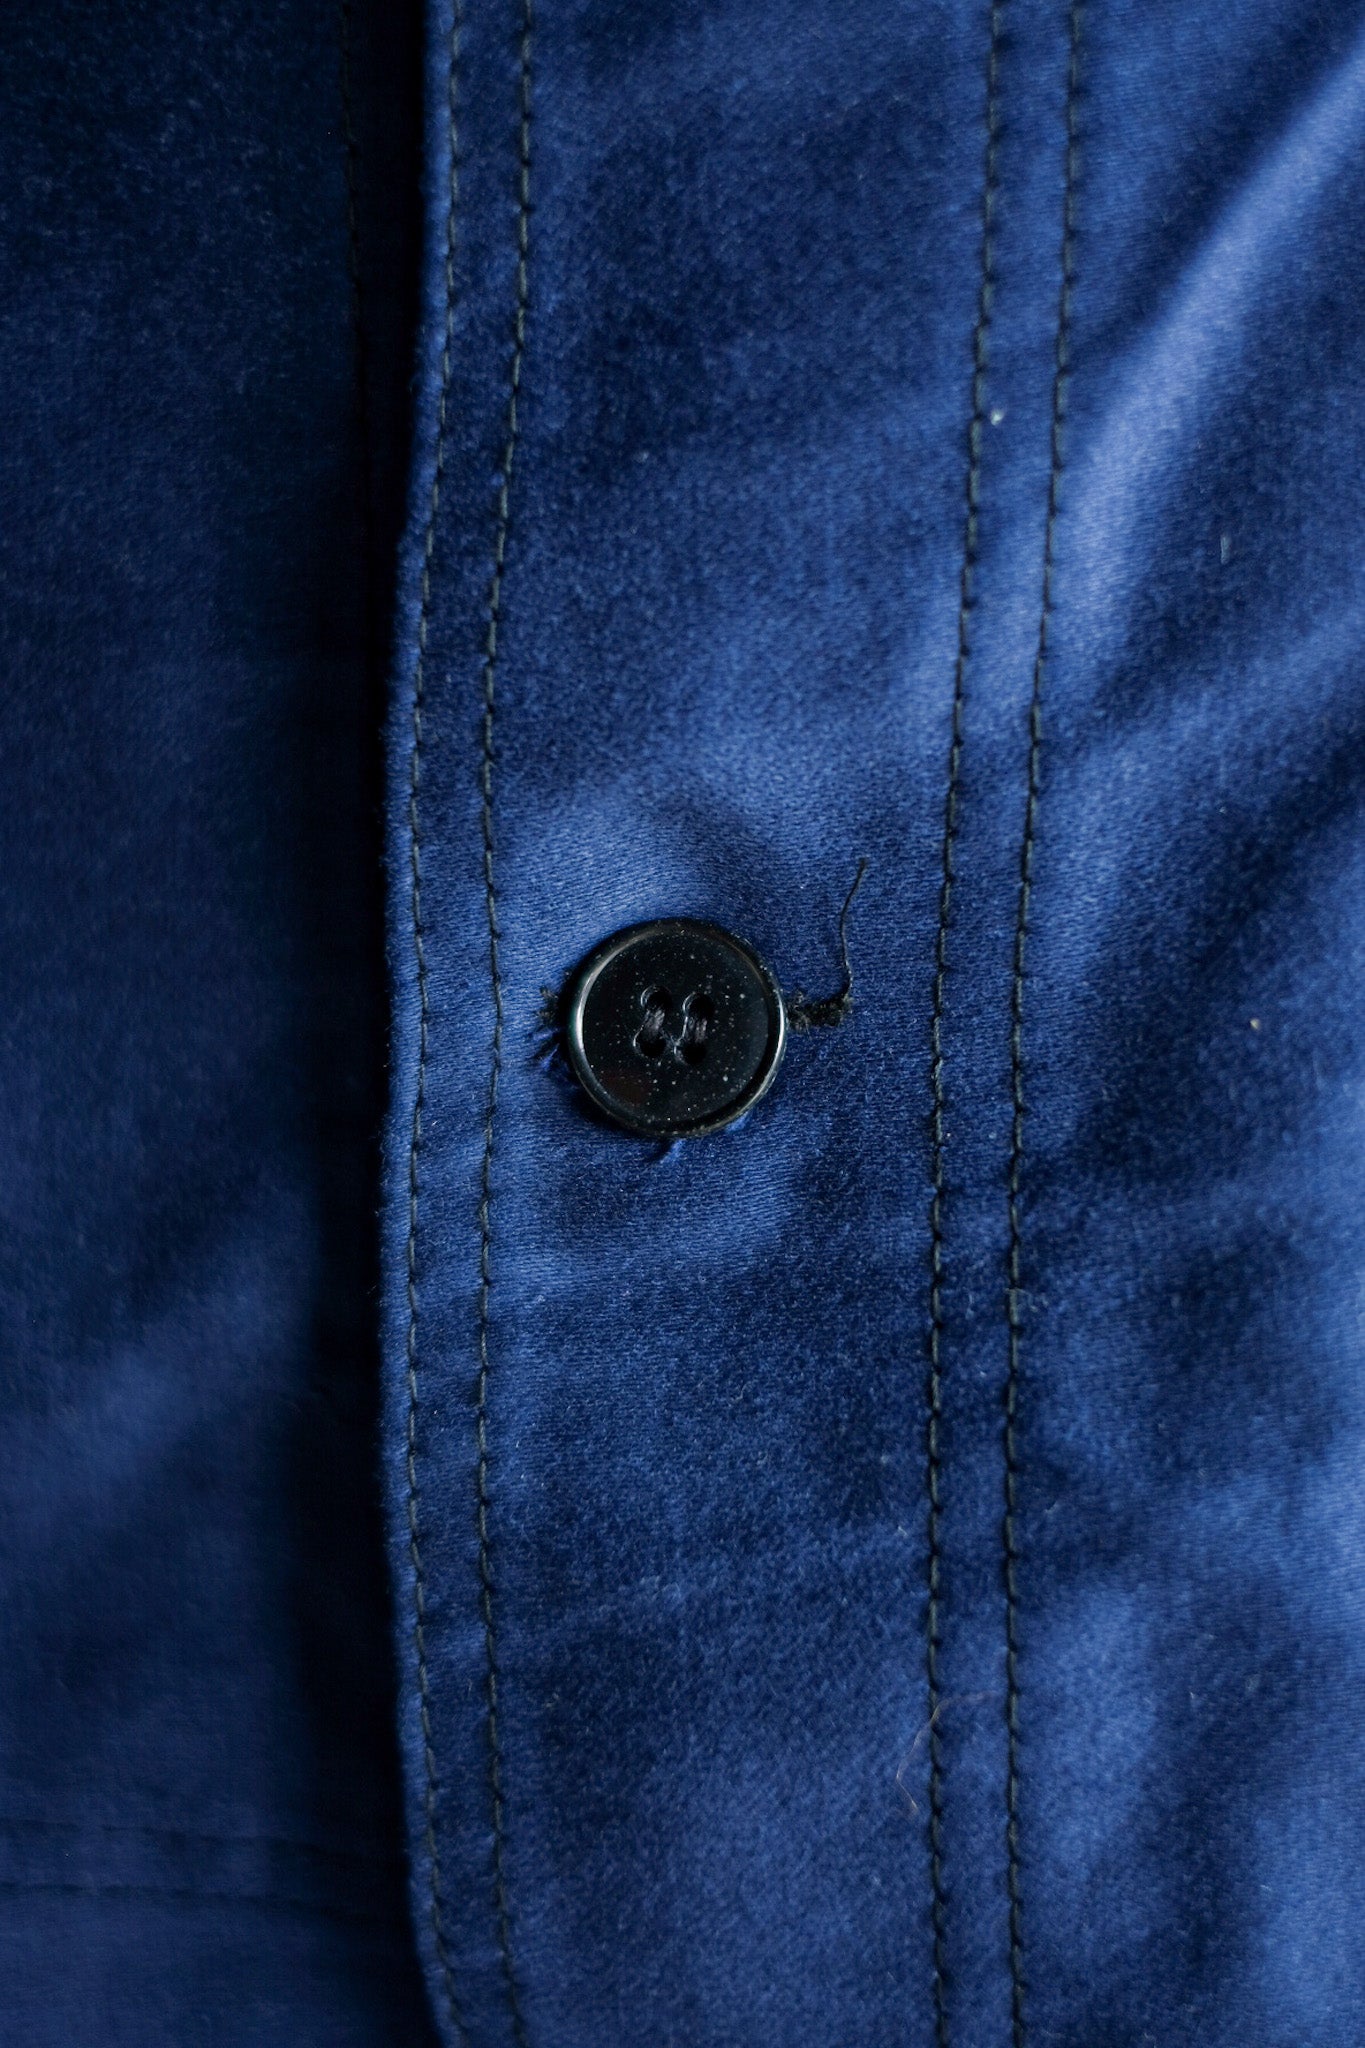 [~ 60's] French Vintage Blue Moleskin Work Jacket "Dead Stock"